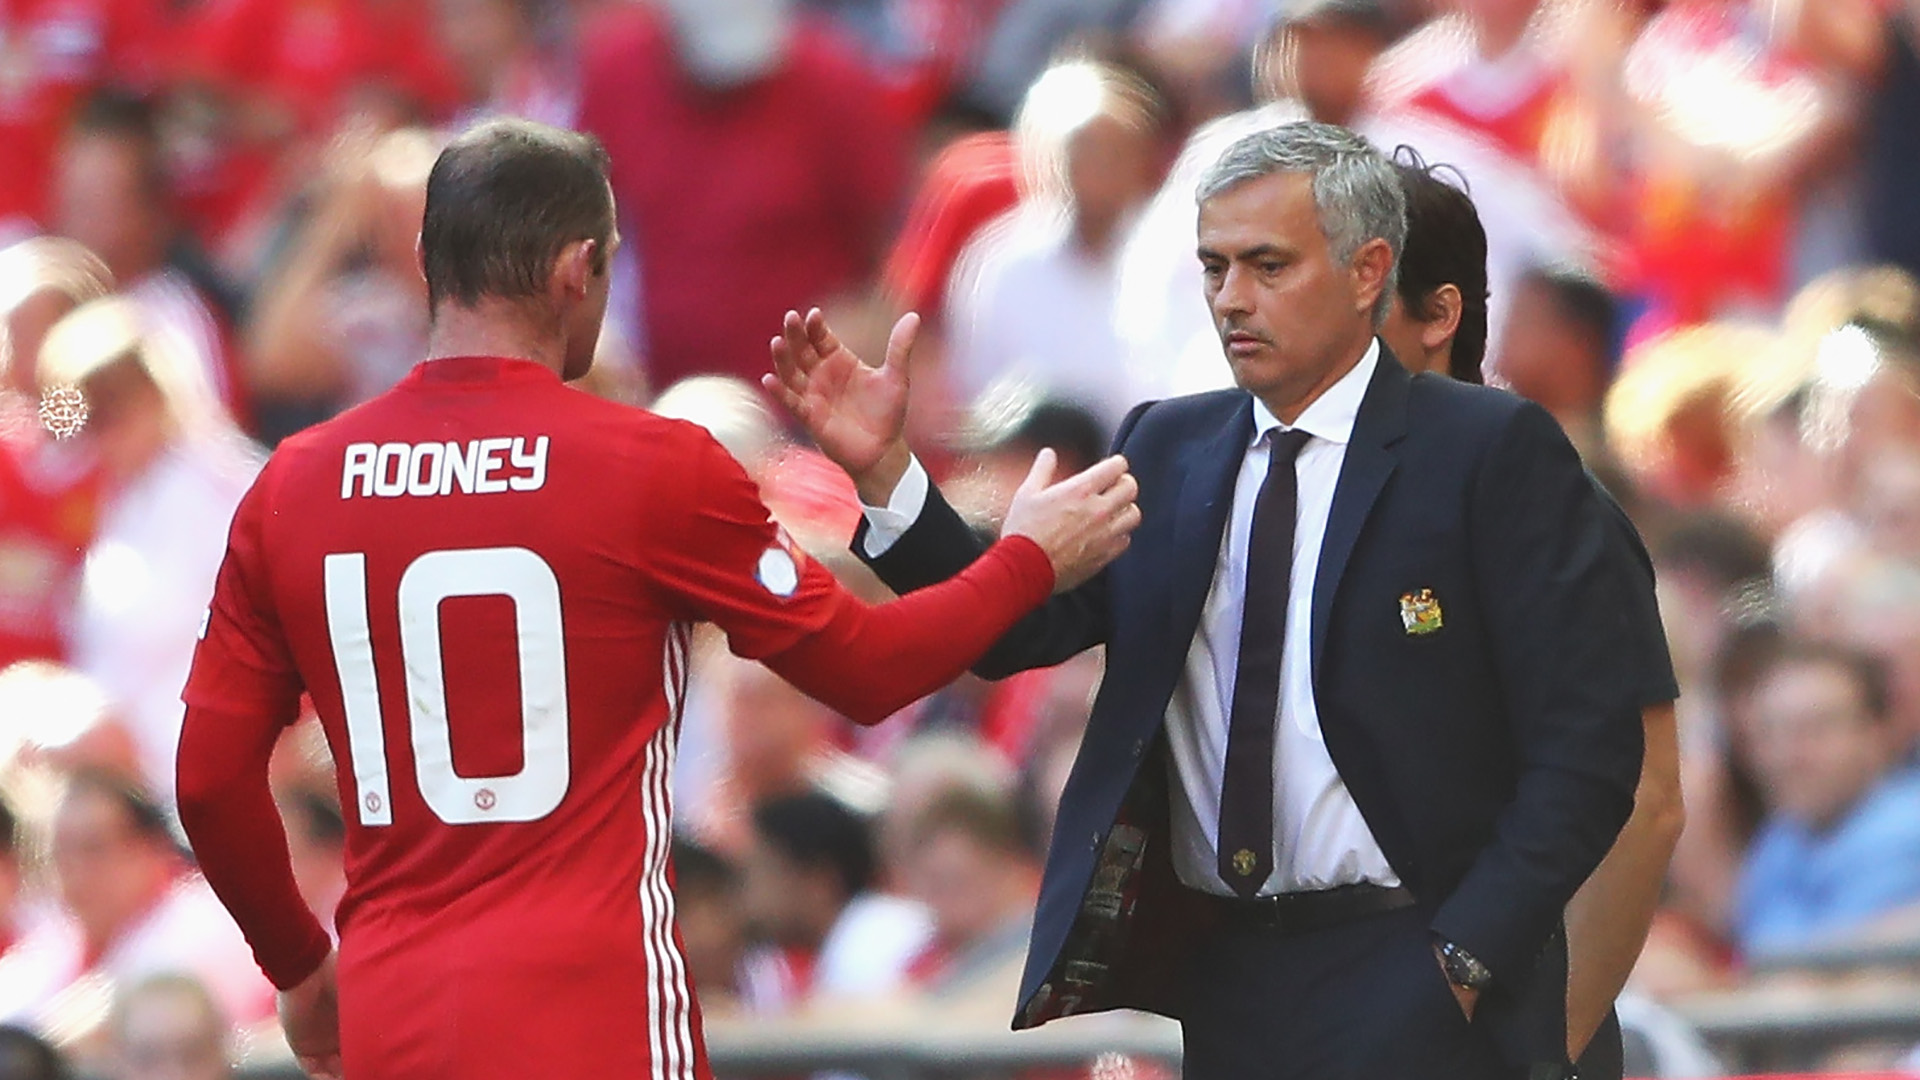 Huyền thoại Man United, Wayne Rooney, đã chỉ trích Jose Mourinho về cách ông ấy xử lý học viện khi dẫn dắt đội chủ sân Old Trafford